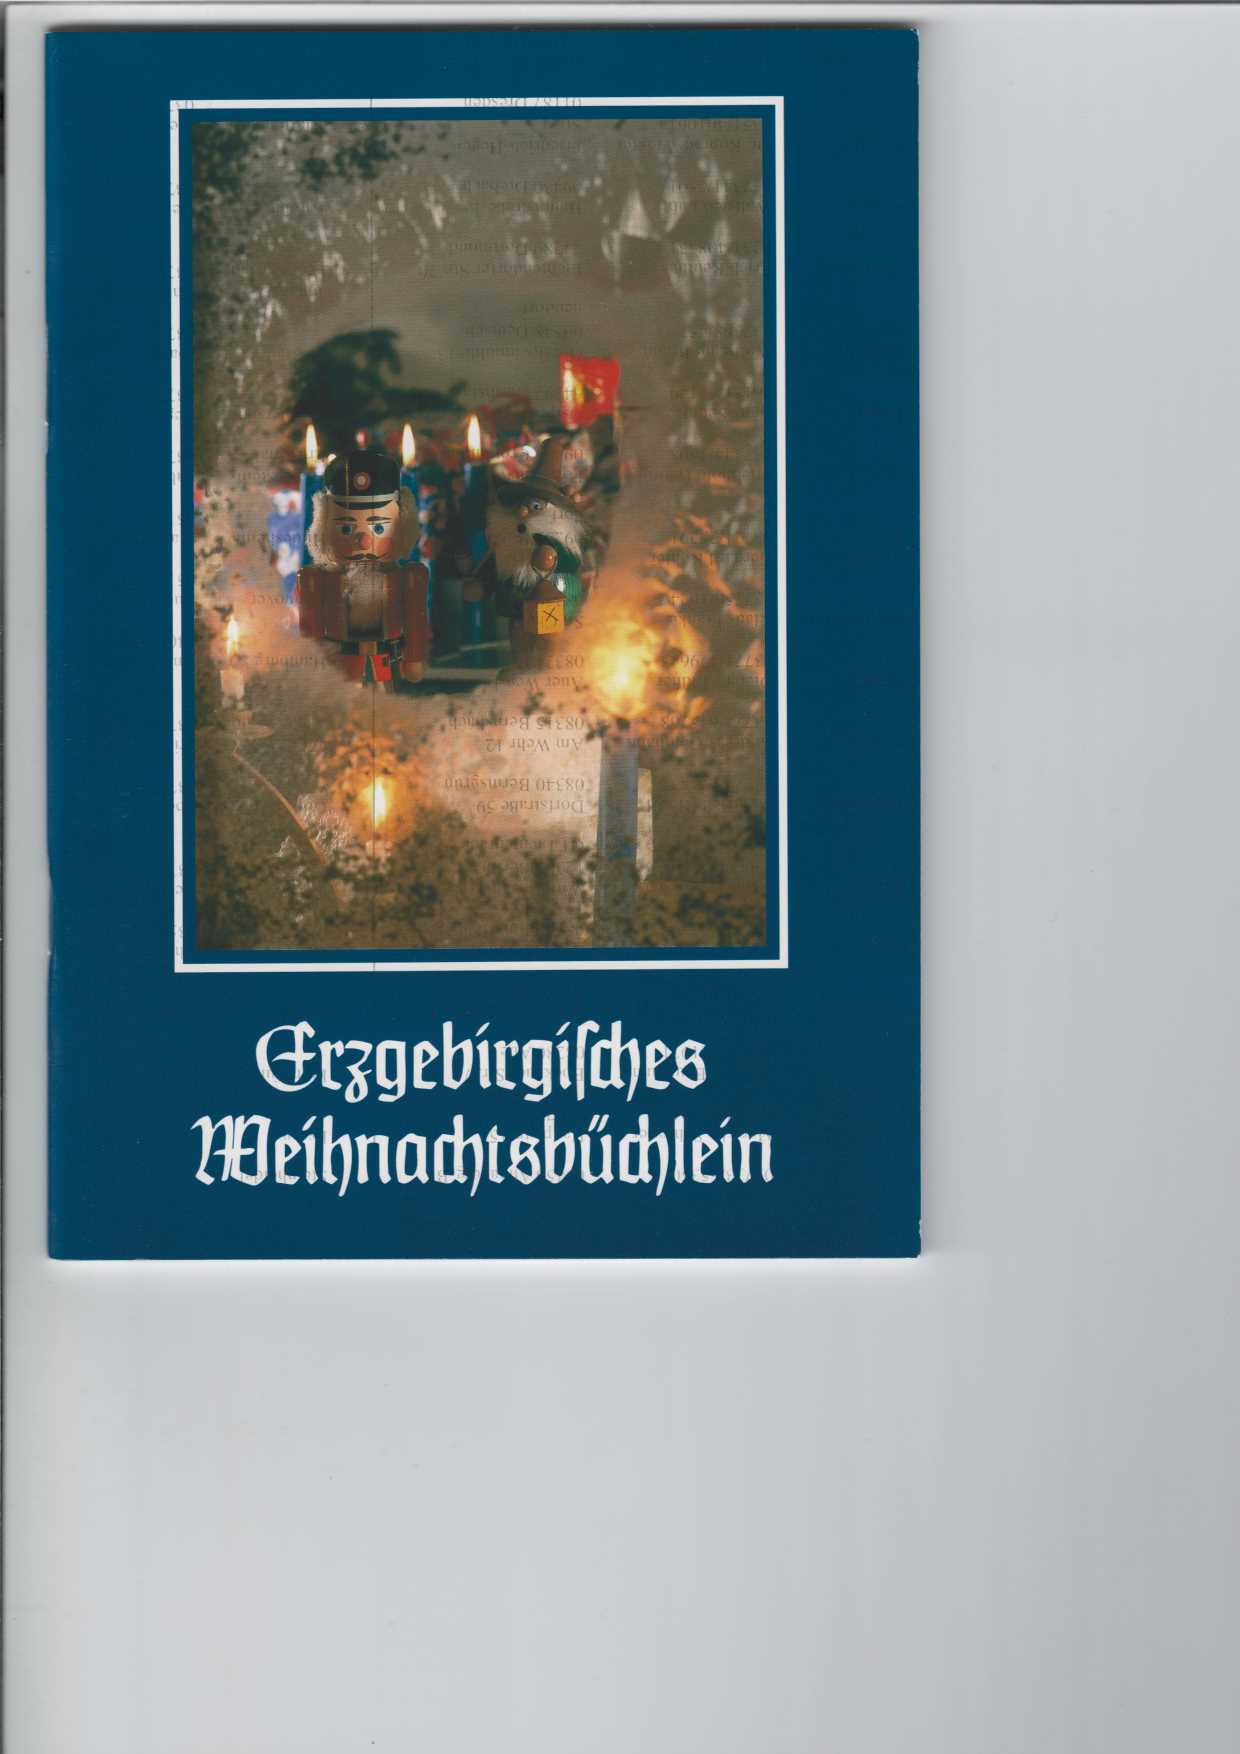   Erzgebirgisches Weihnachtsbchlein 1999. 